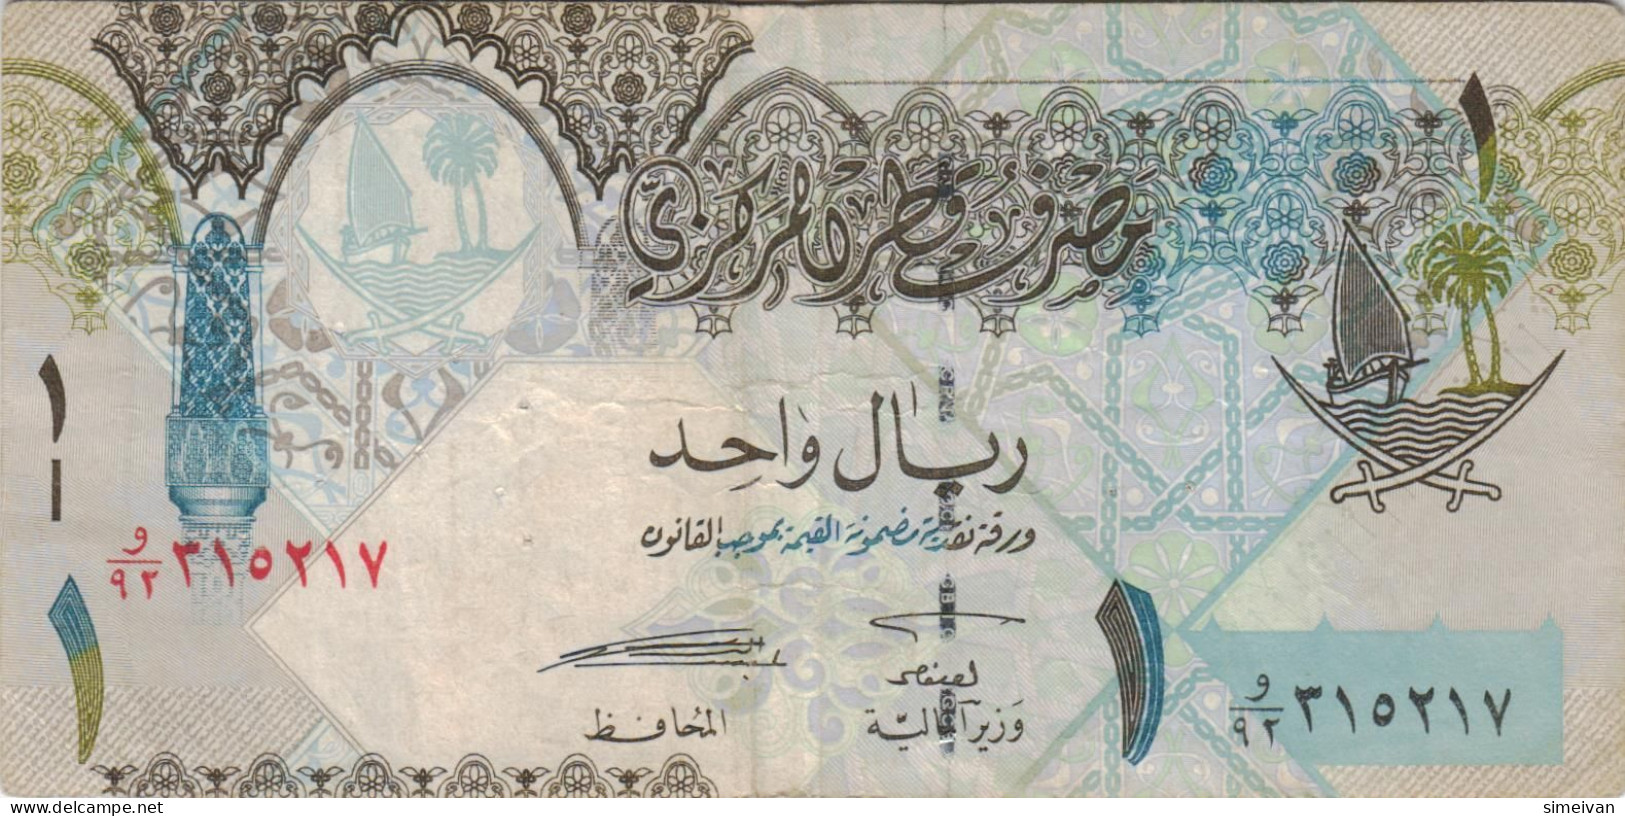 Qatar 1 Riyal ND (2003) P-20 Banknote Middle East Currency Katar #5156 - Qatar